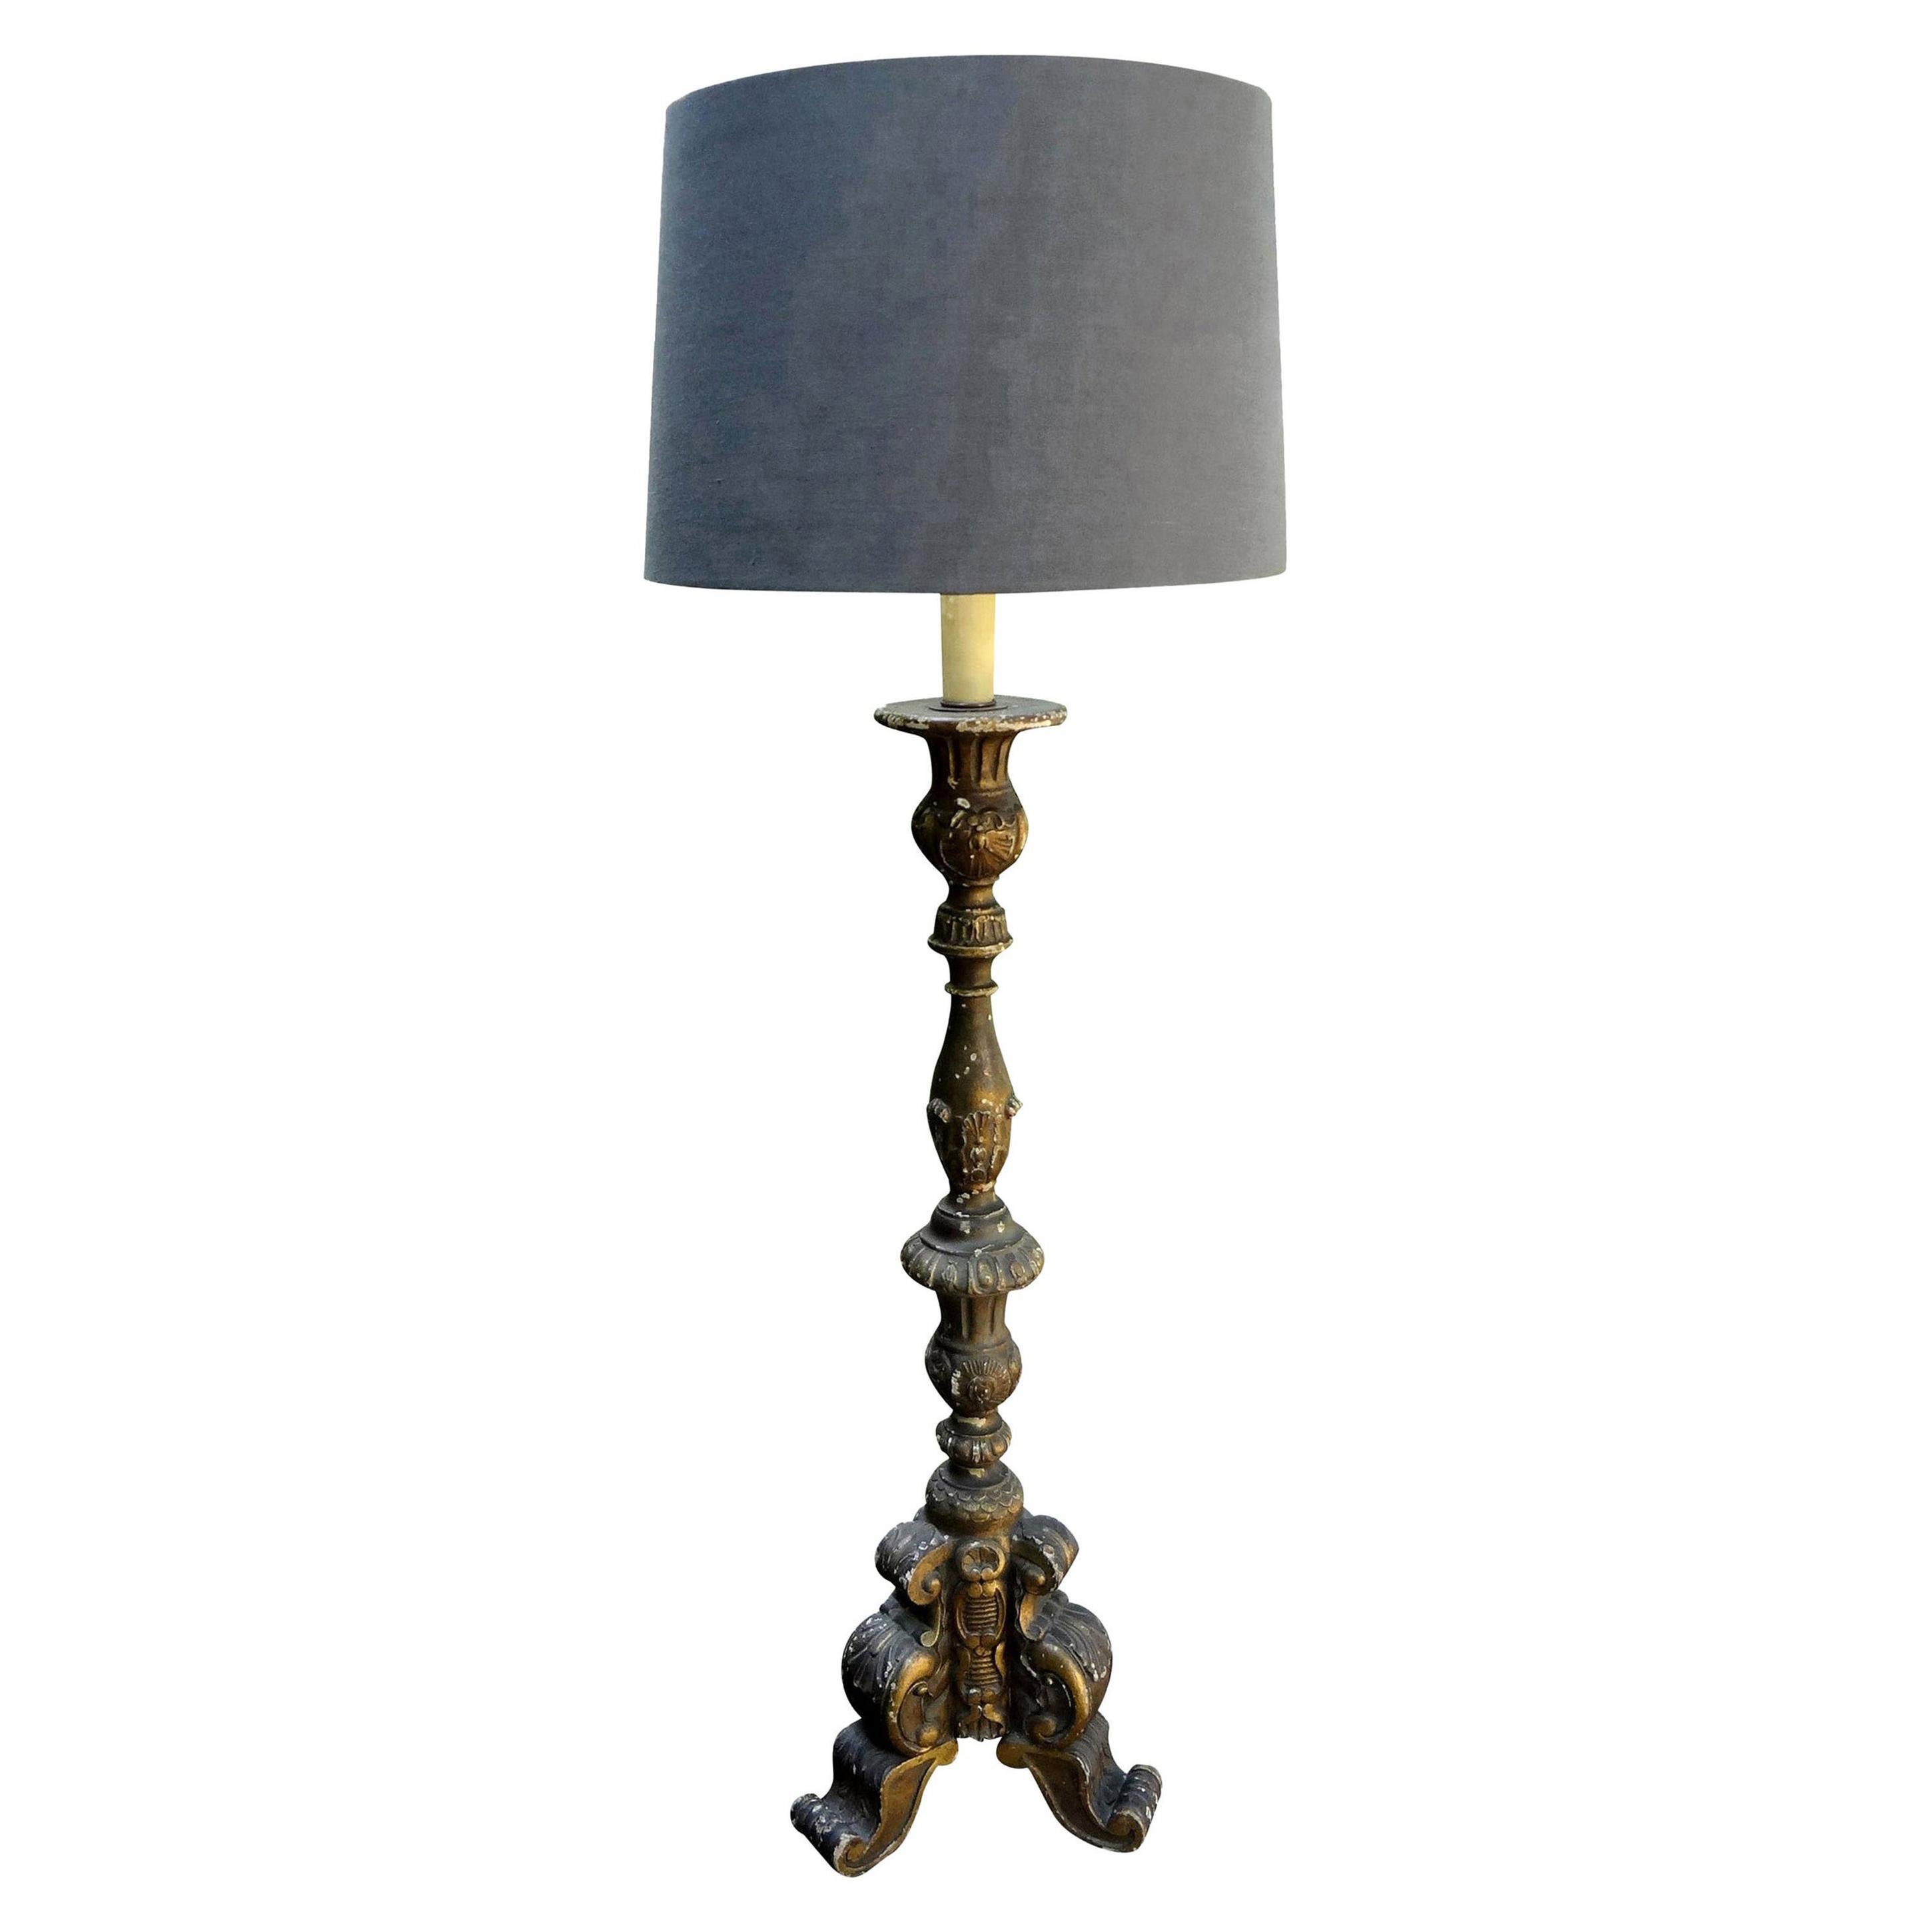 Italienische Vergolderholzlampe aus dem 19.
Wunderschöner, hoher, vergoldeter Kerzenständer aus italienischem Holz aus dem 19. Jahrhundert, der in eine Tischlampe umgewandelt wurde. Diese wunderschöne italienische Vergolderholzlampe wurde neu